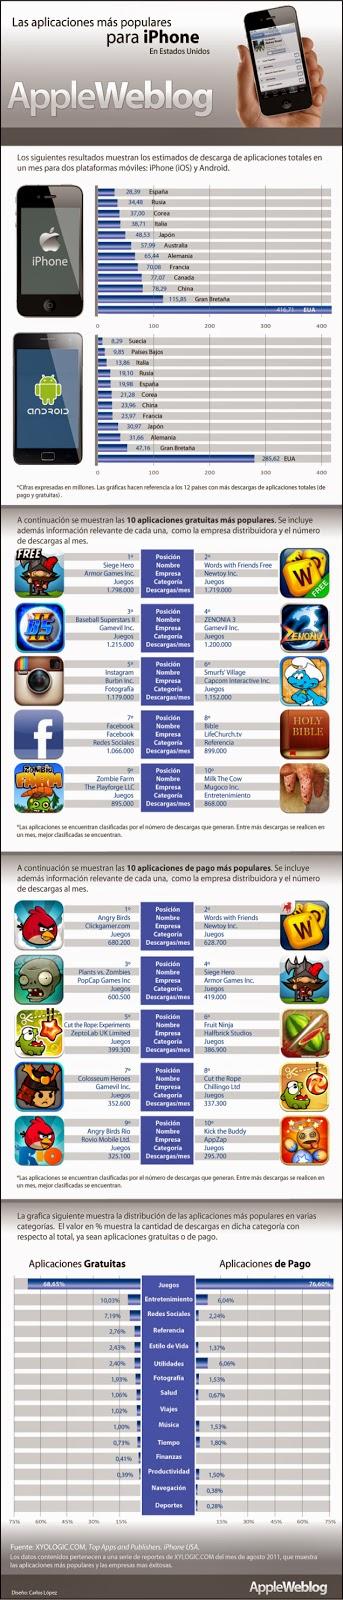 Aplicaciones para iPhone#tecnología#entretenimiento#infografía